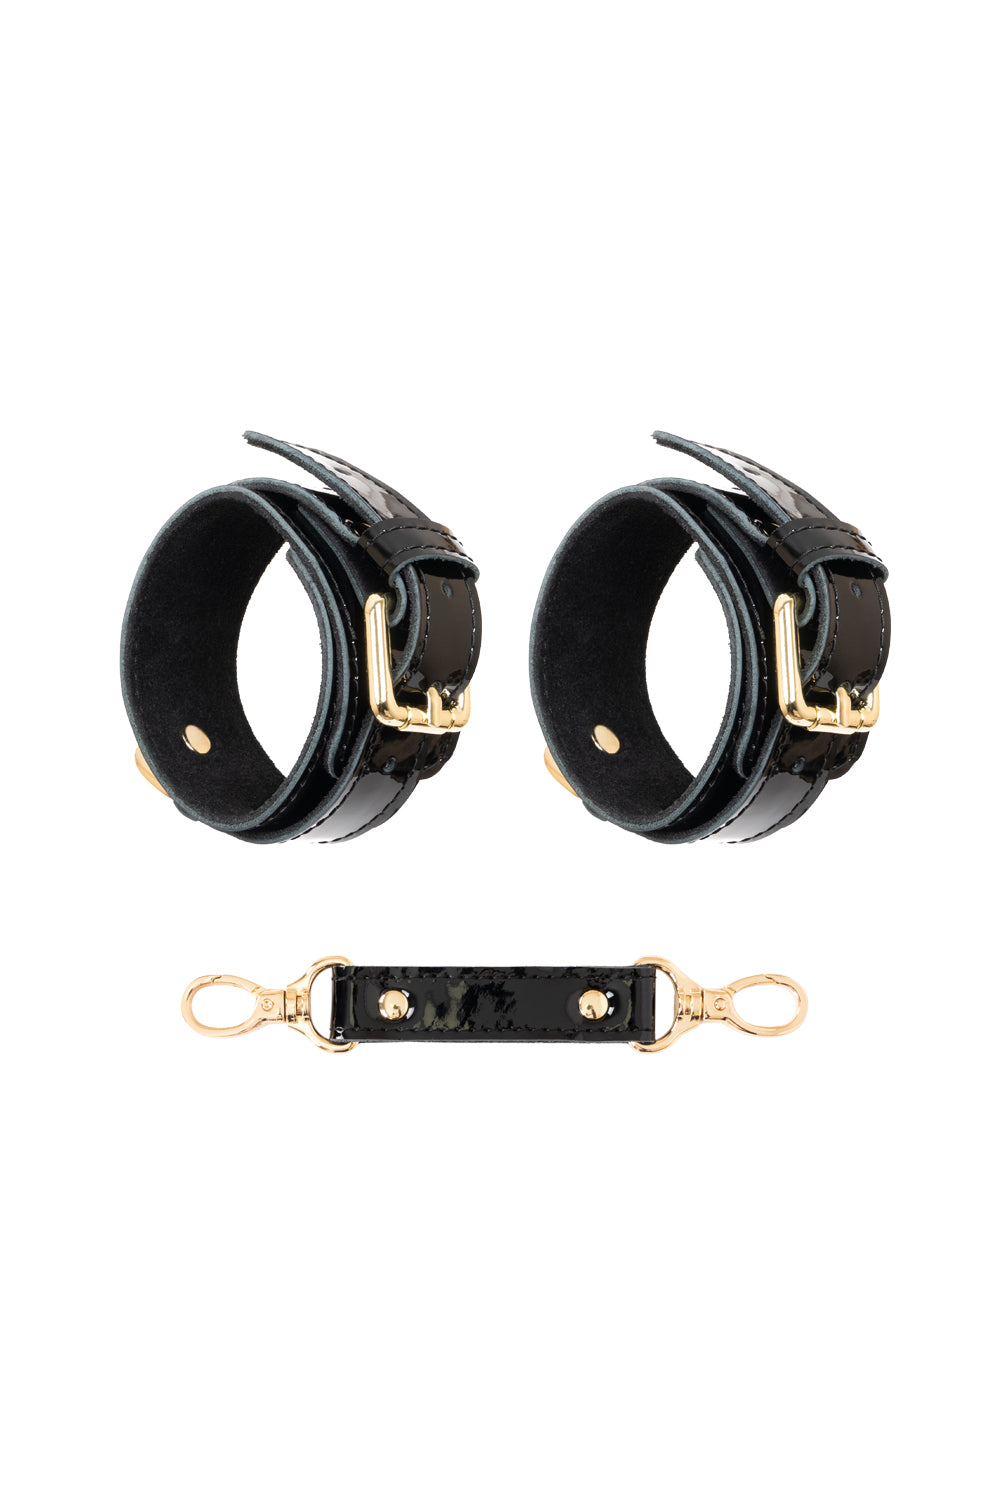 Lacquered leather handcuffs. Premium cuff set. Black